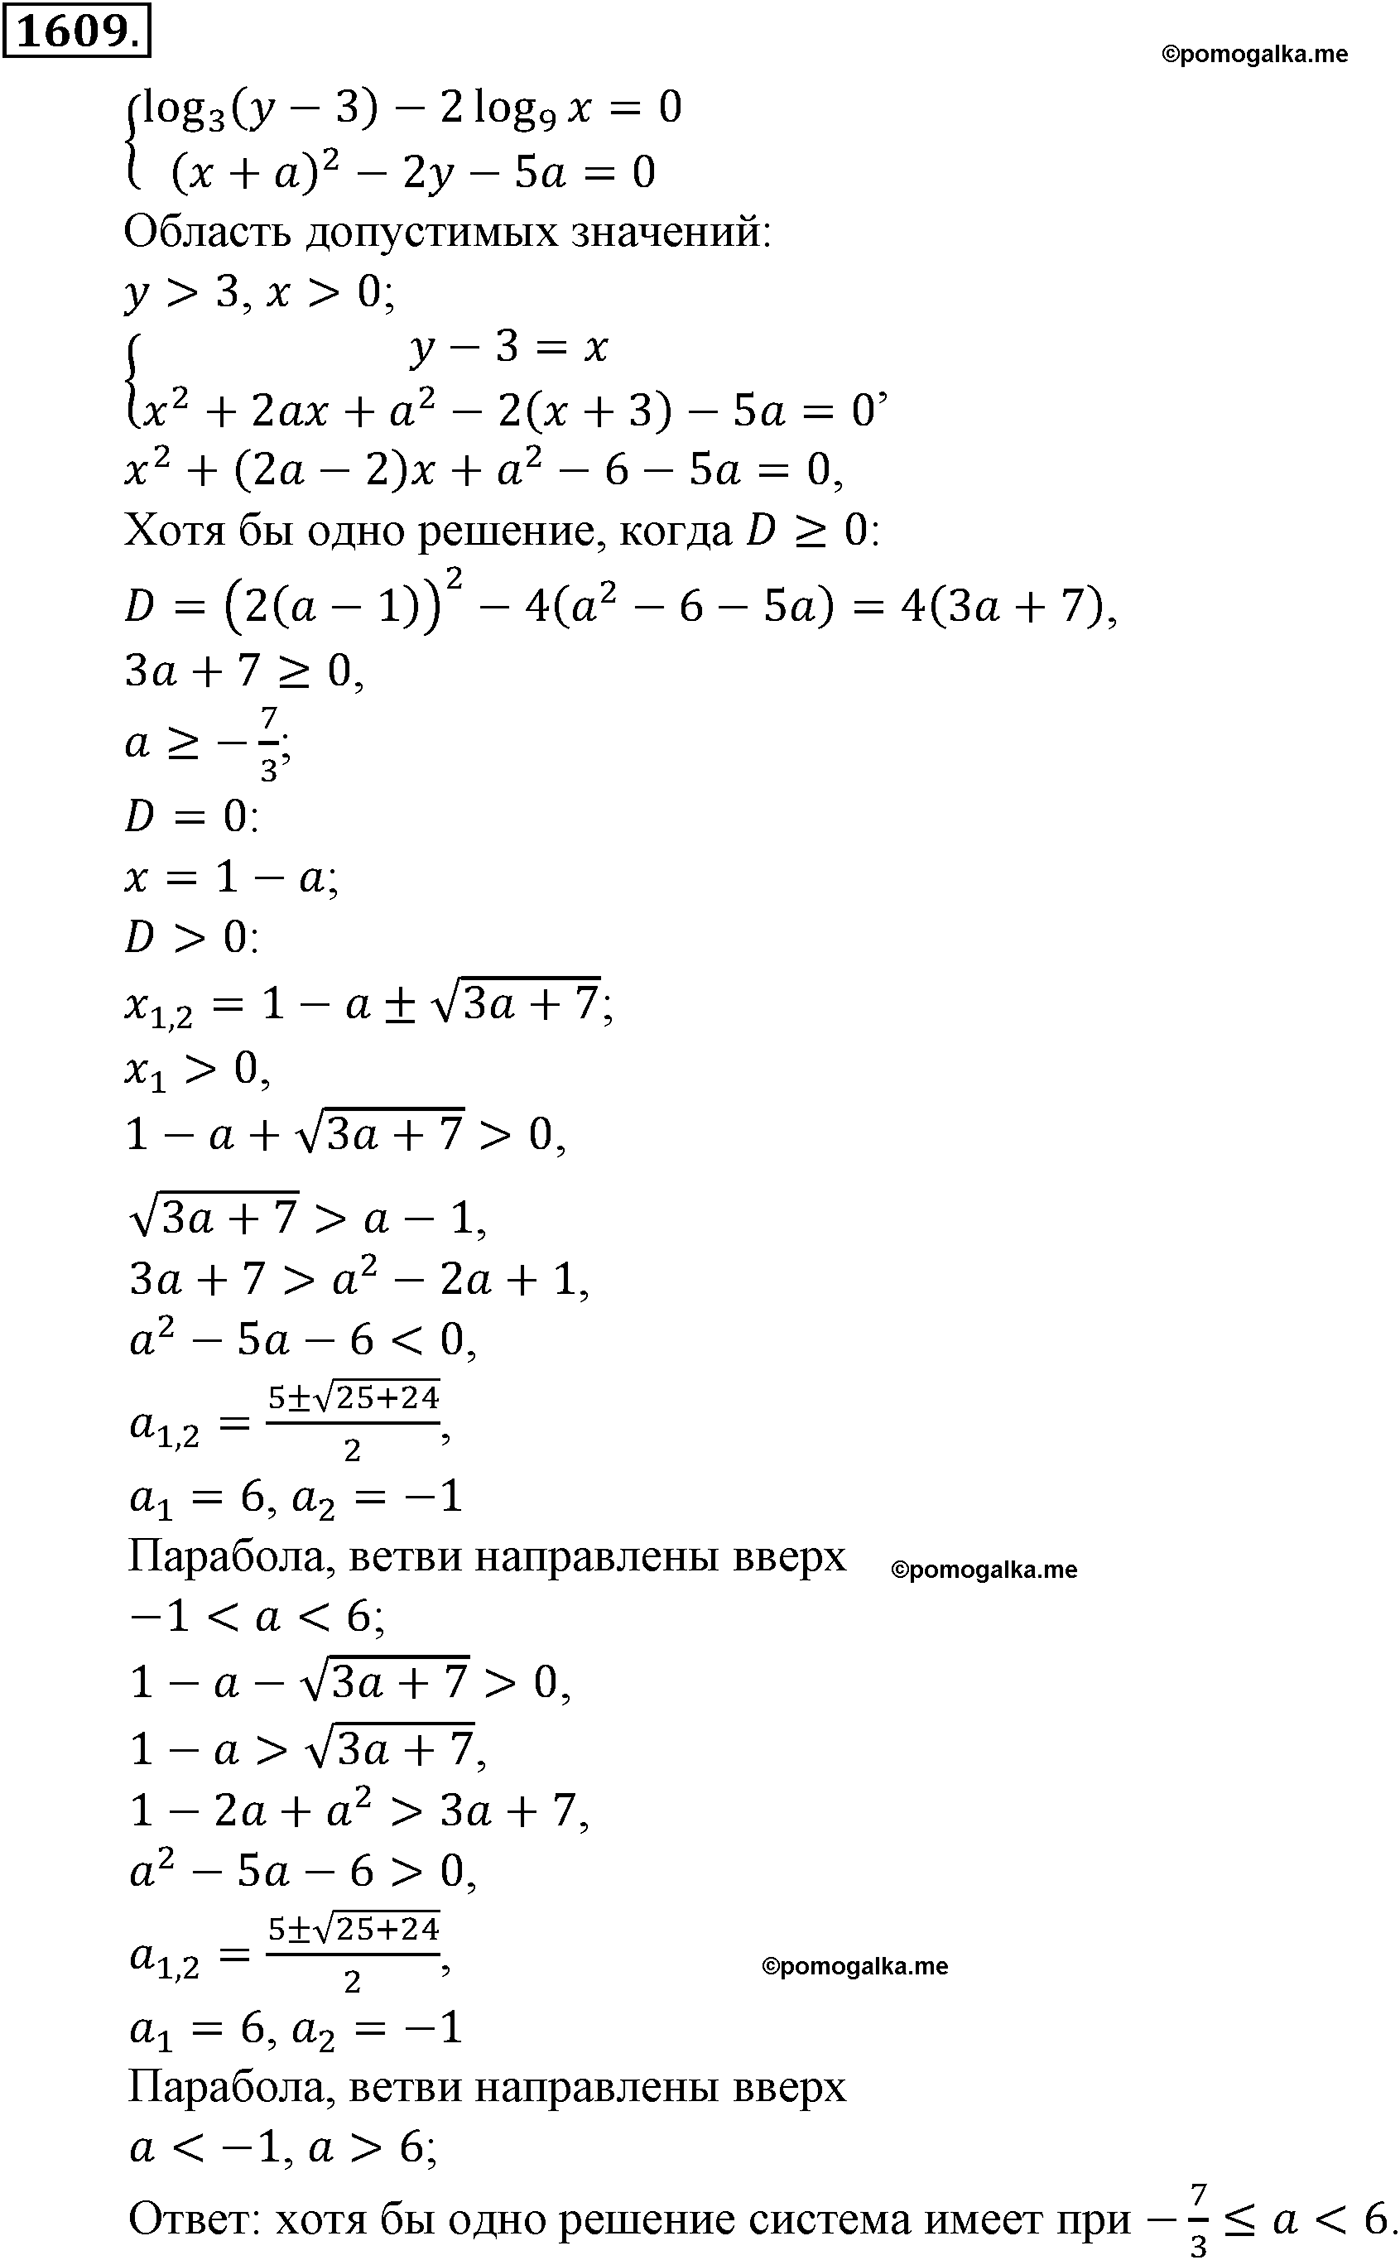 разбор задачи №1609 по алгебре за 10-11 класс из учебника Алимова, Колягина